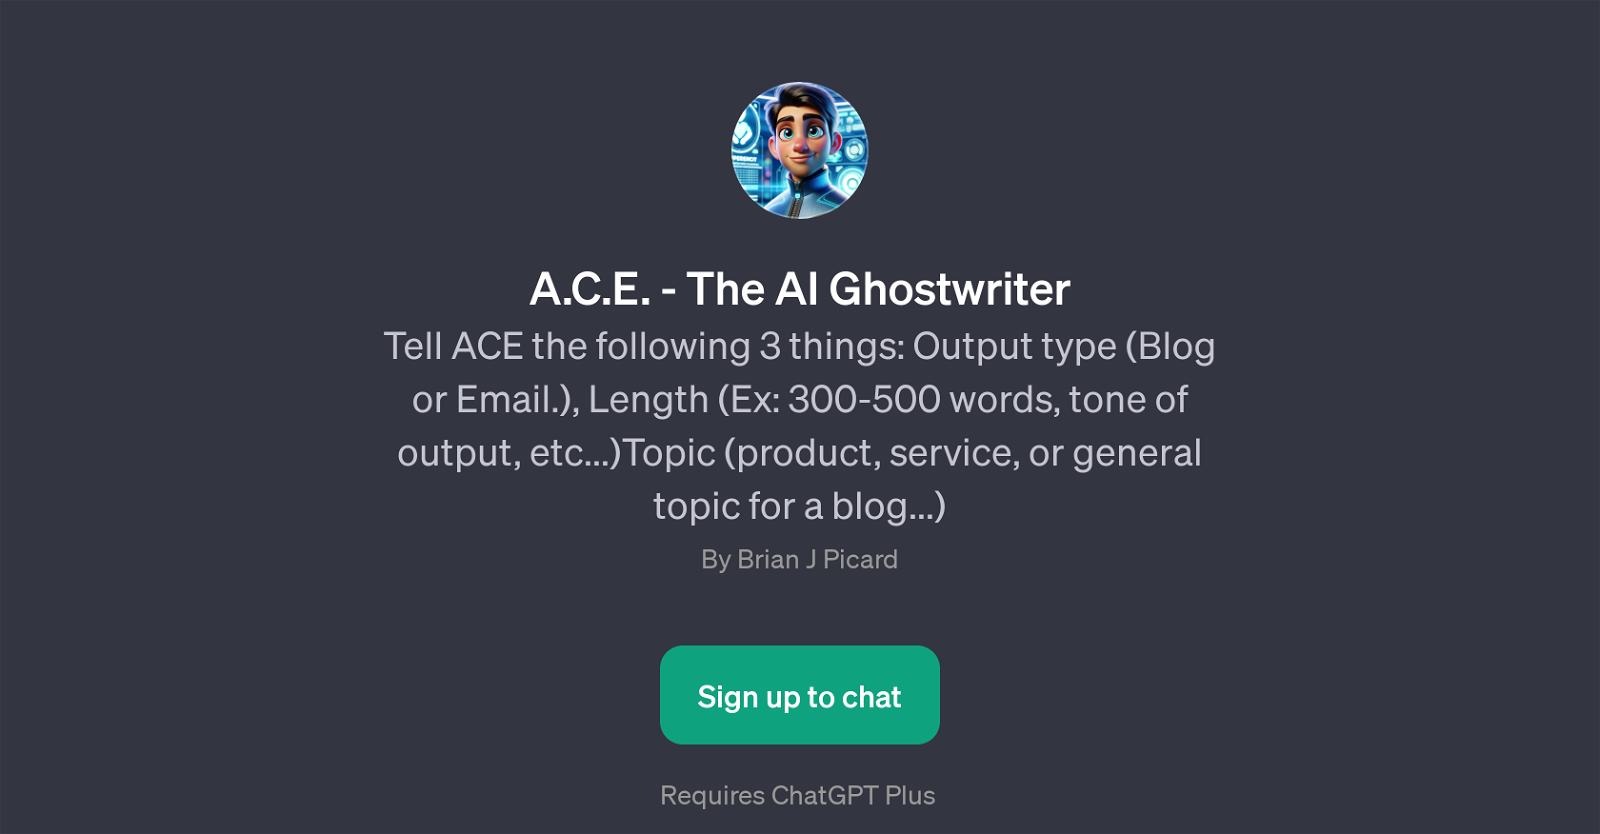 A.C.E. - The AI Ghostwriter website